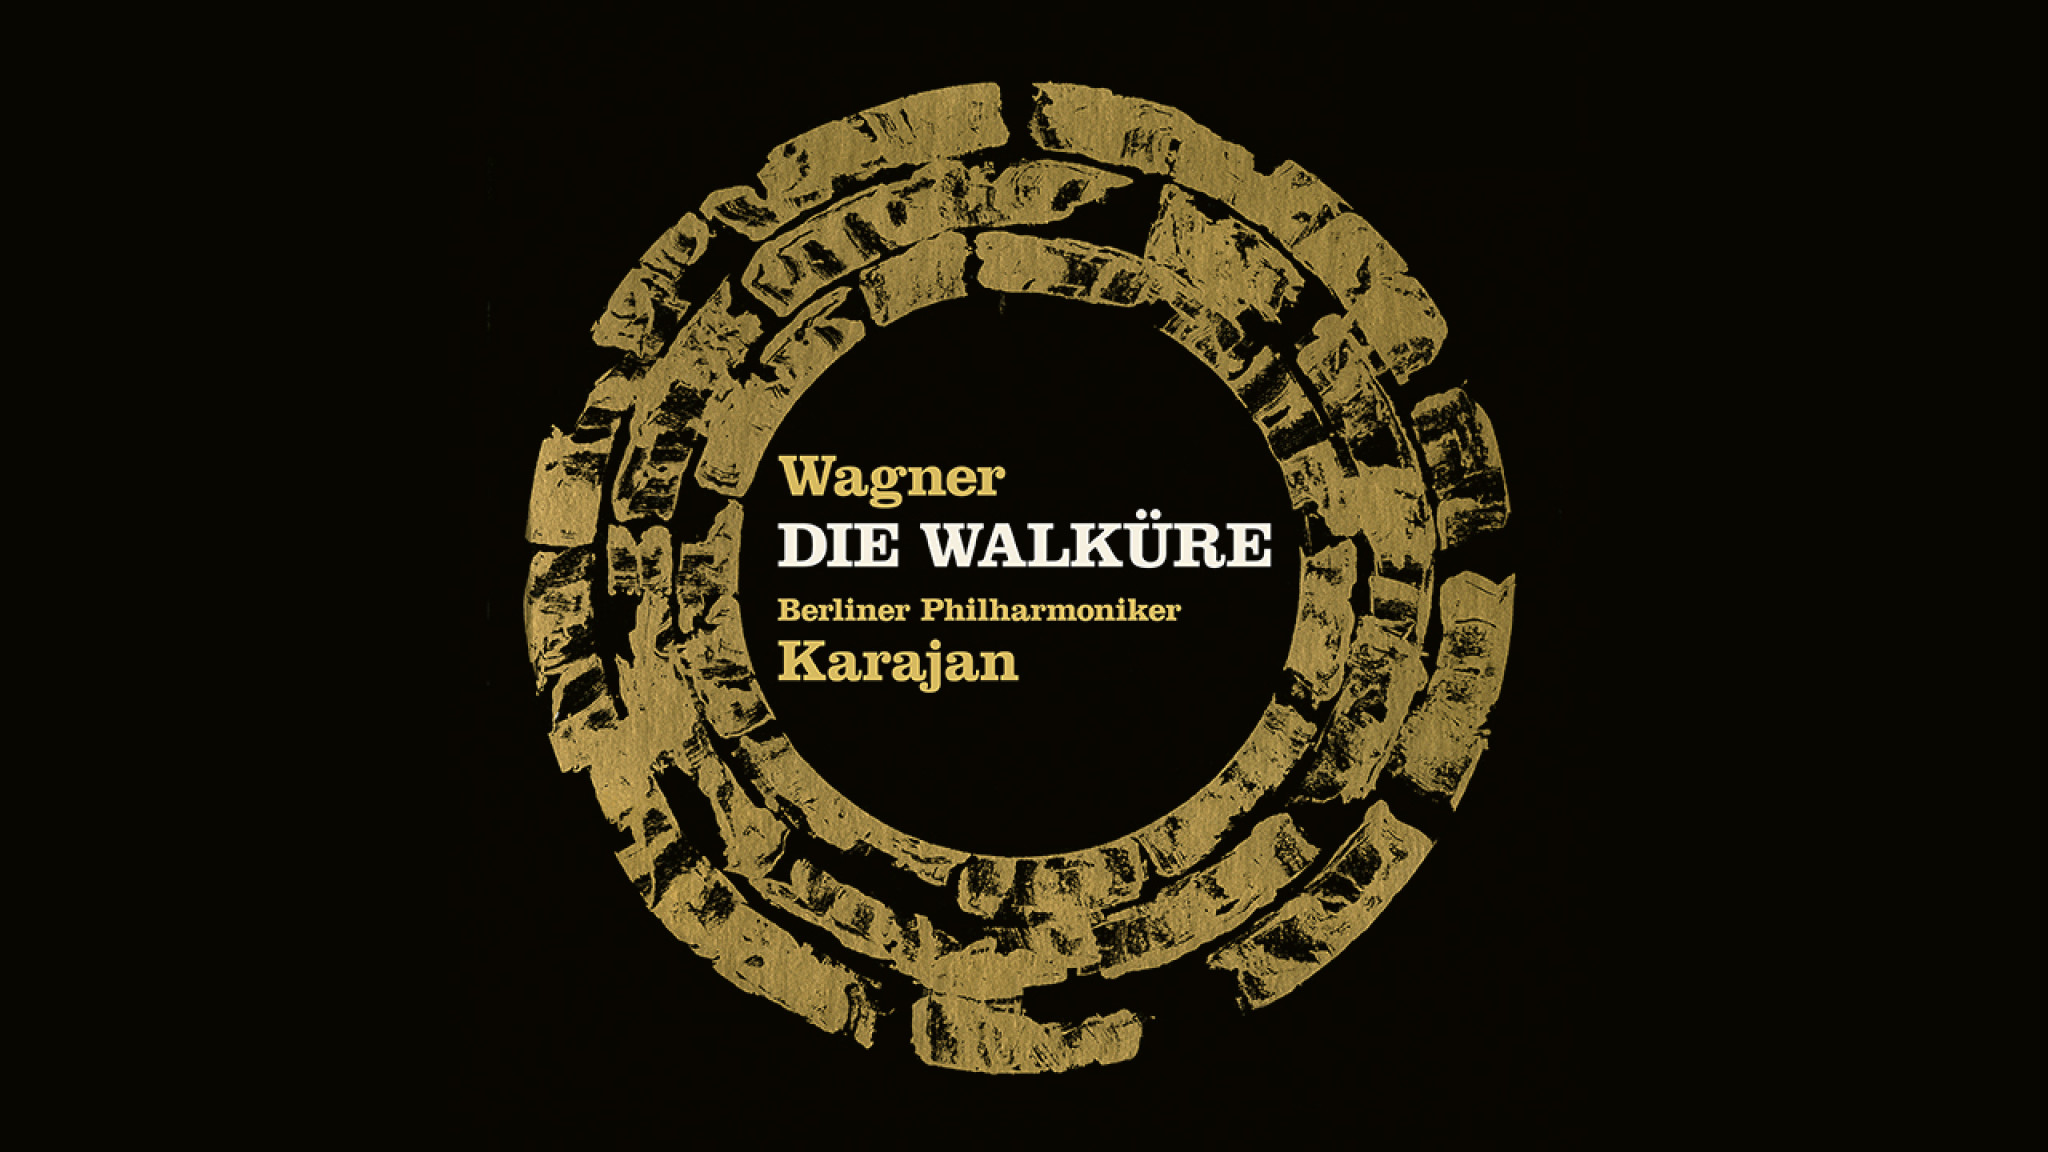 Remastered for Blu-ray Audio: Karajan’s Die Walküre